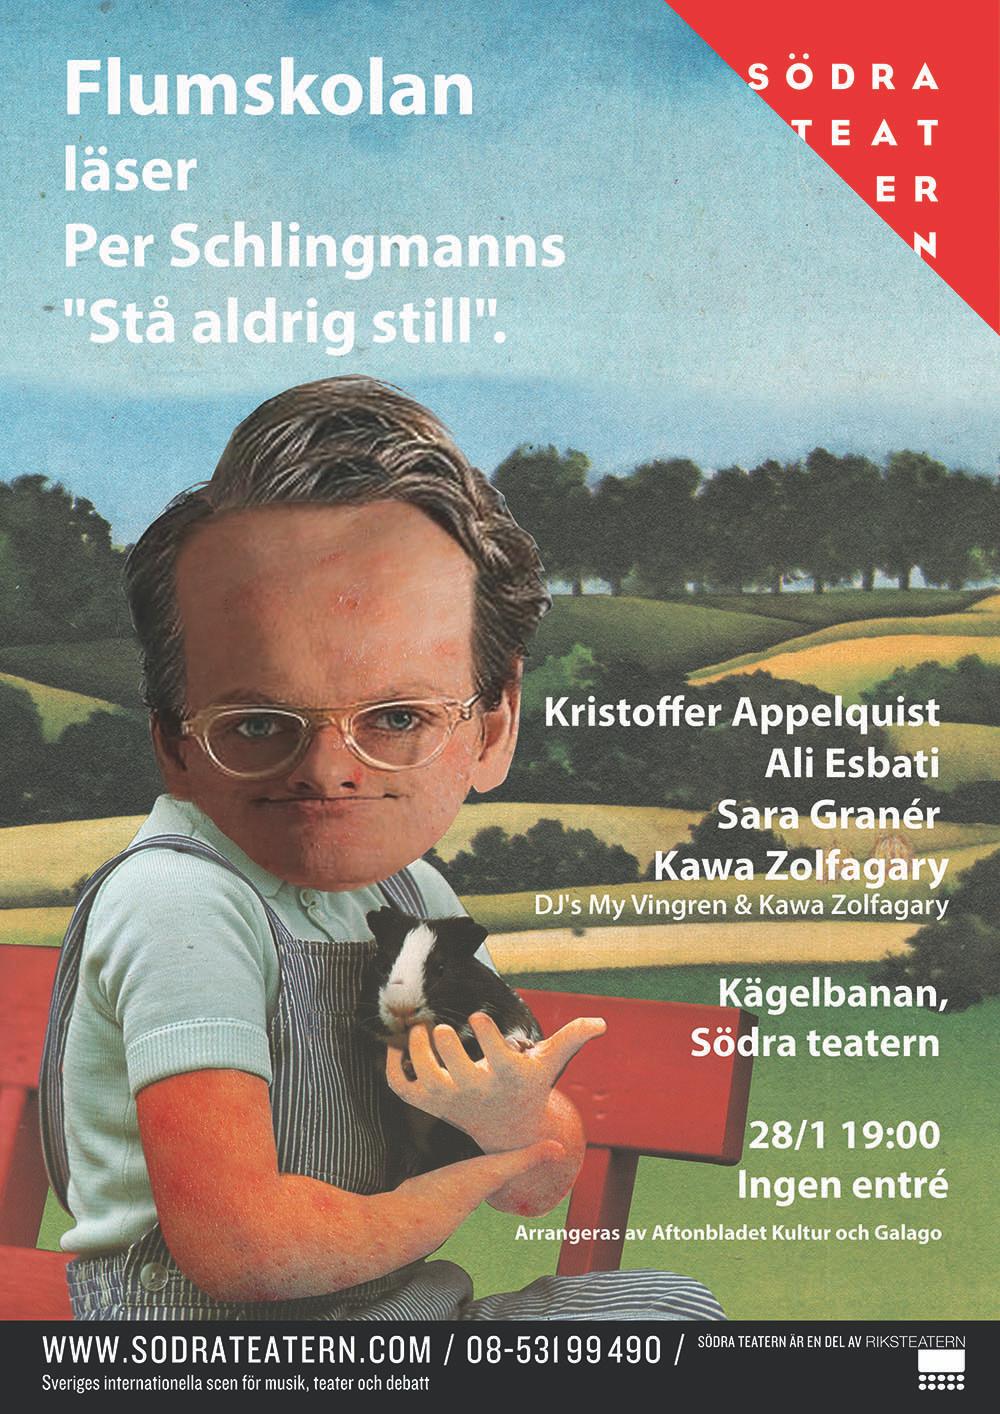 Premiäravsnittet handlar om Per Schlingmanns politiska självbiografi.